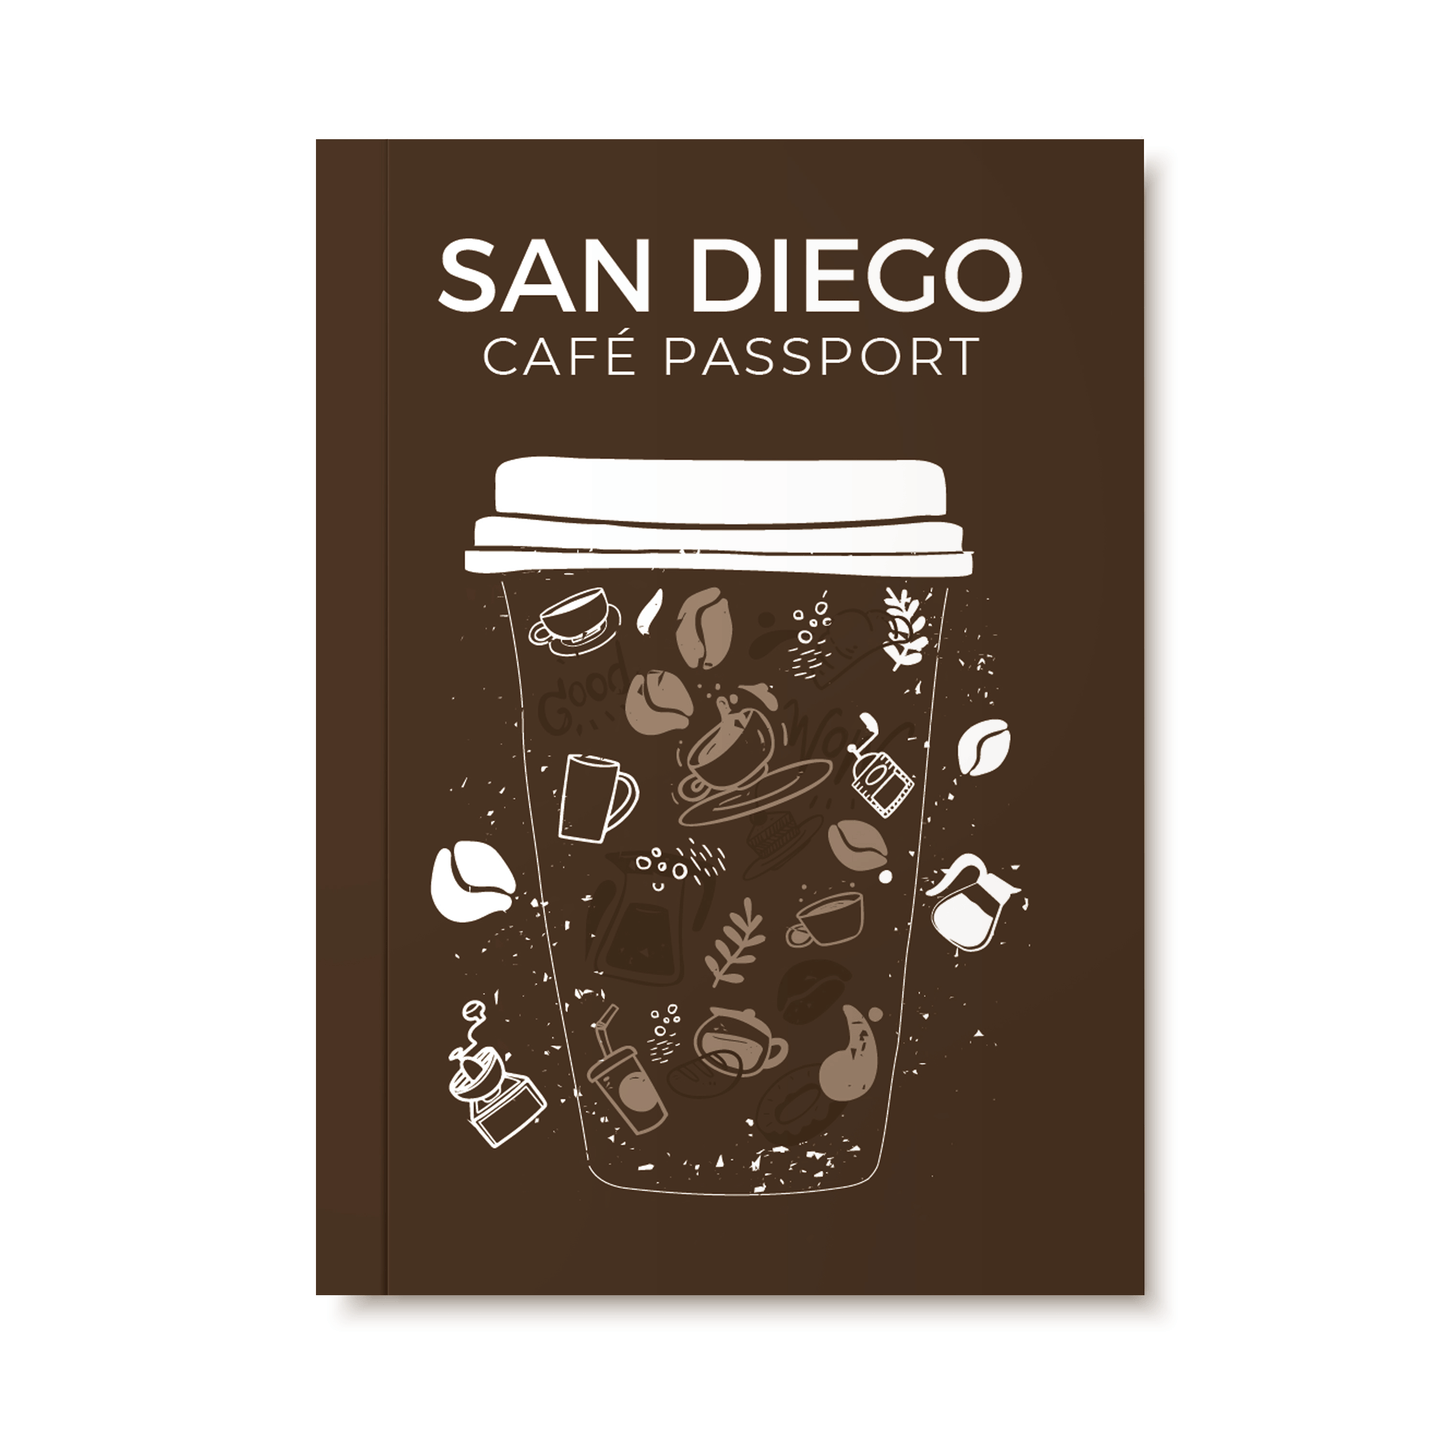 San Diego Cafe Passport